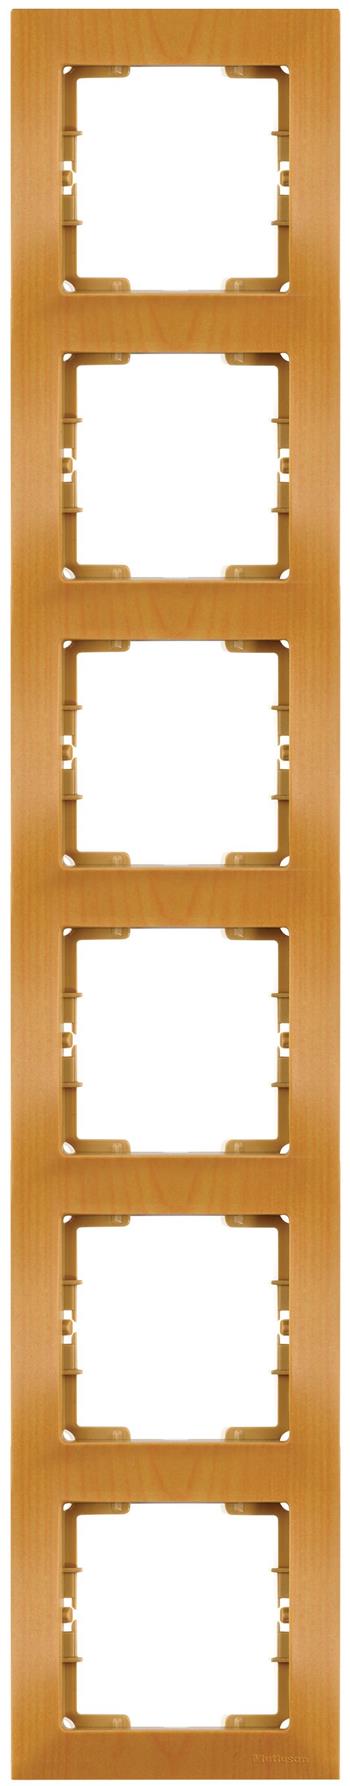 6fach Rahmen vertikal Eiche (CANDELA Holz Optik)